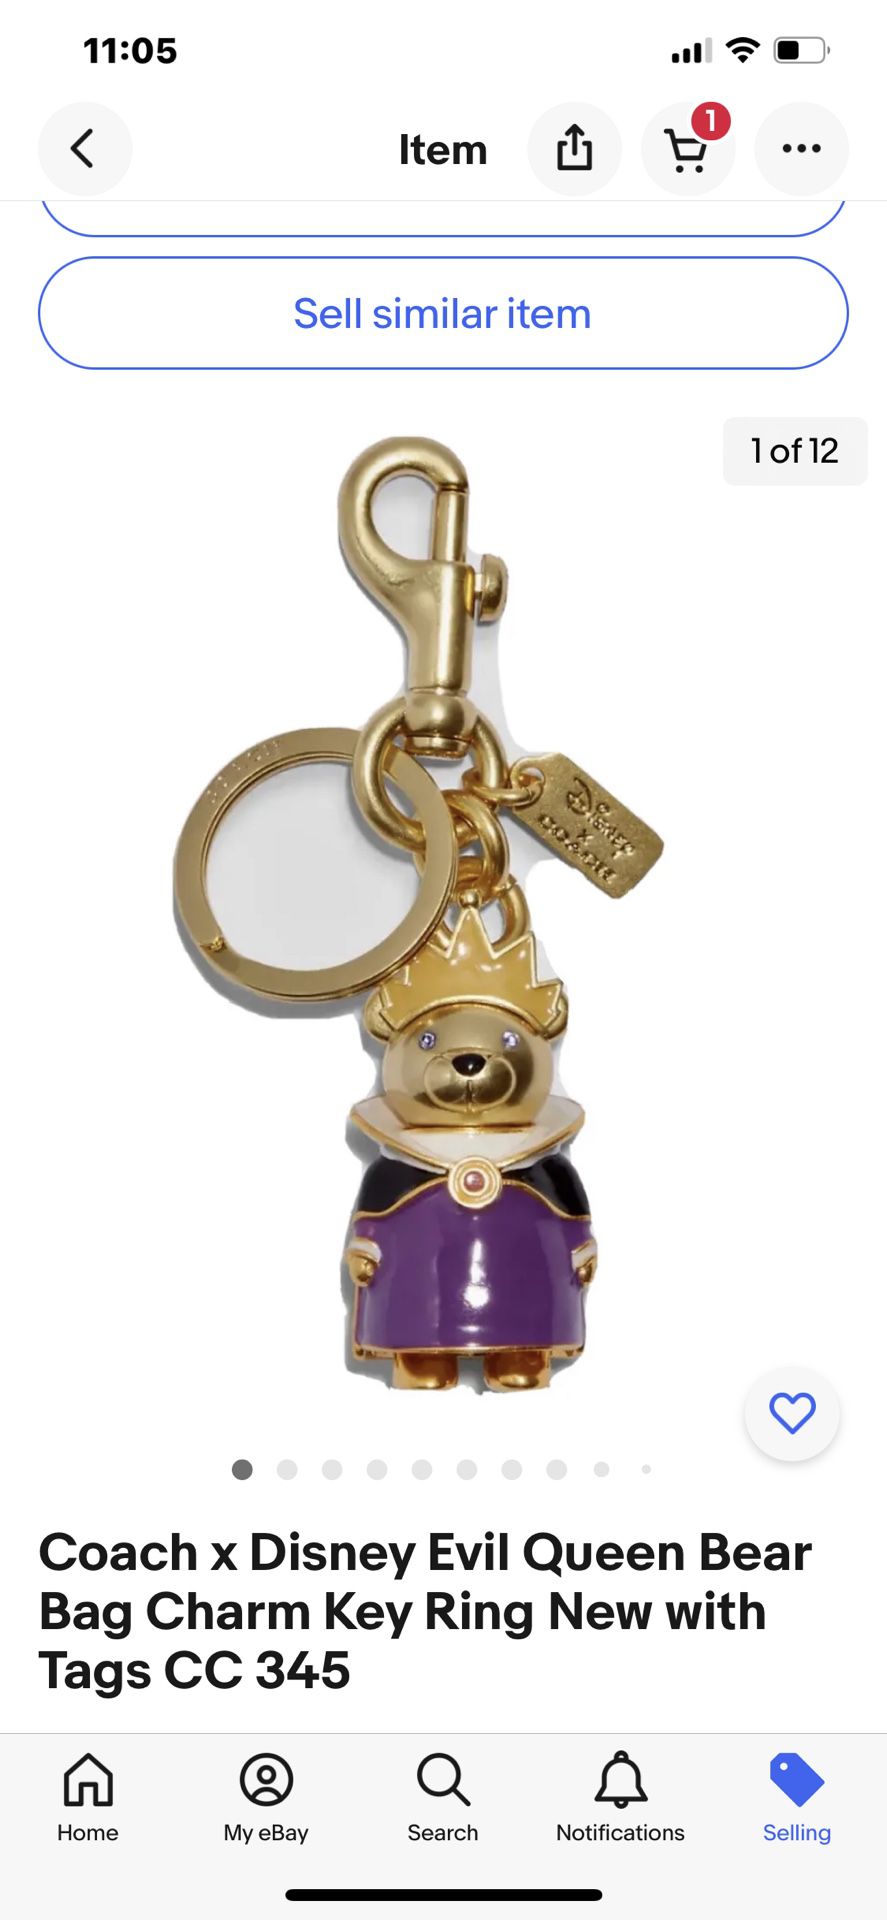 Coach x Disney keychain villains Ursula OR Evil Queen keychain * Pick One! 